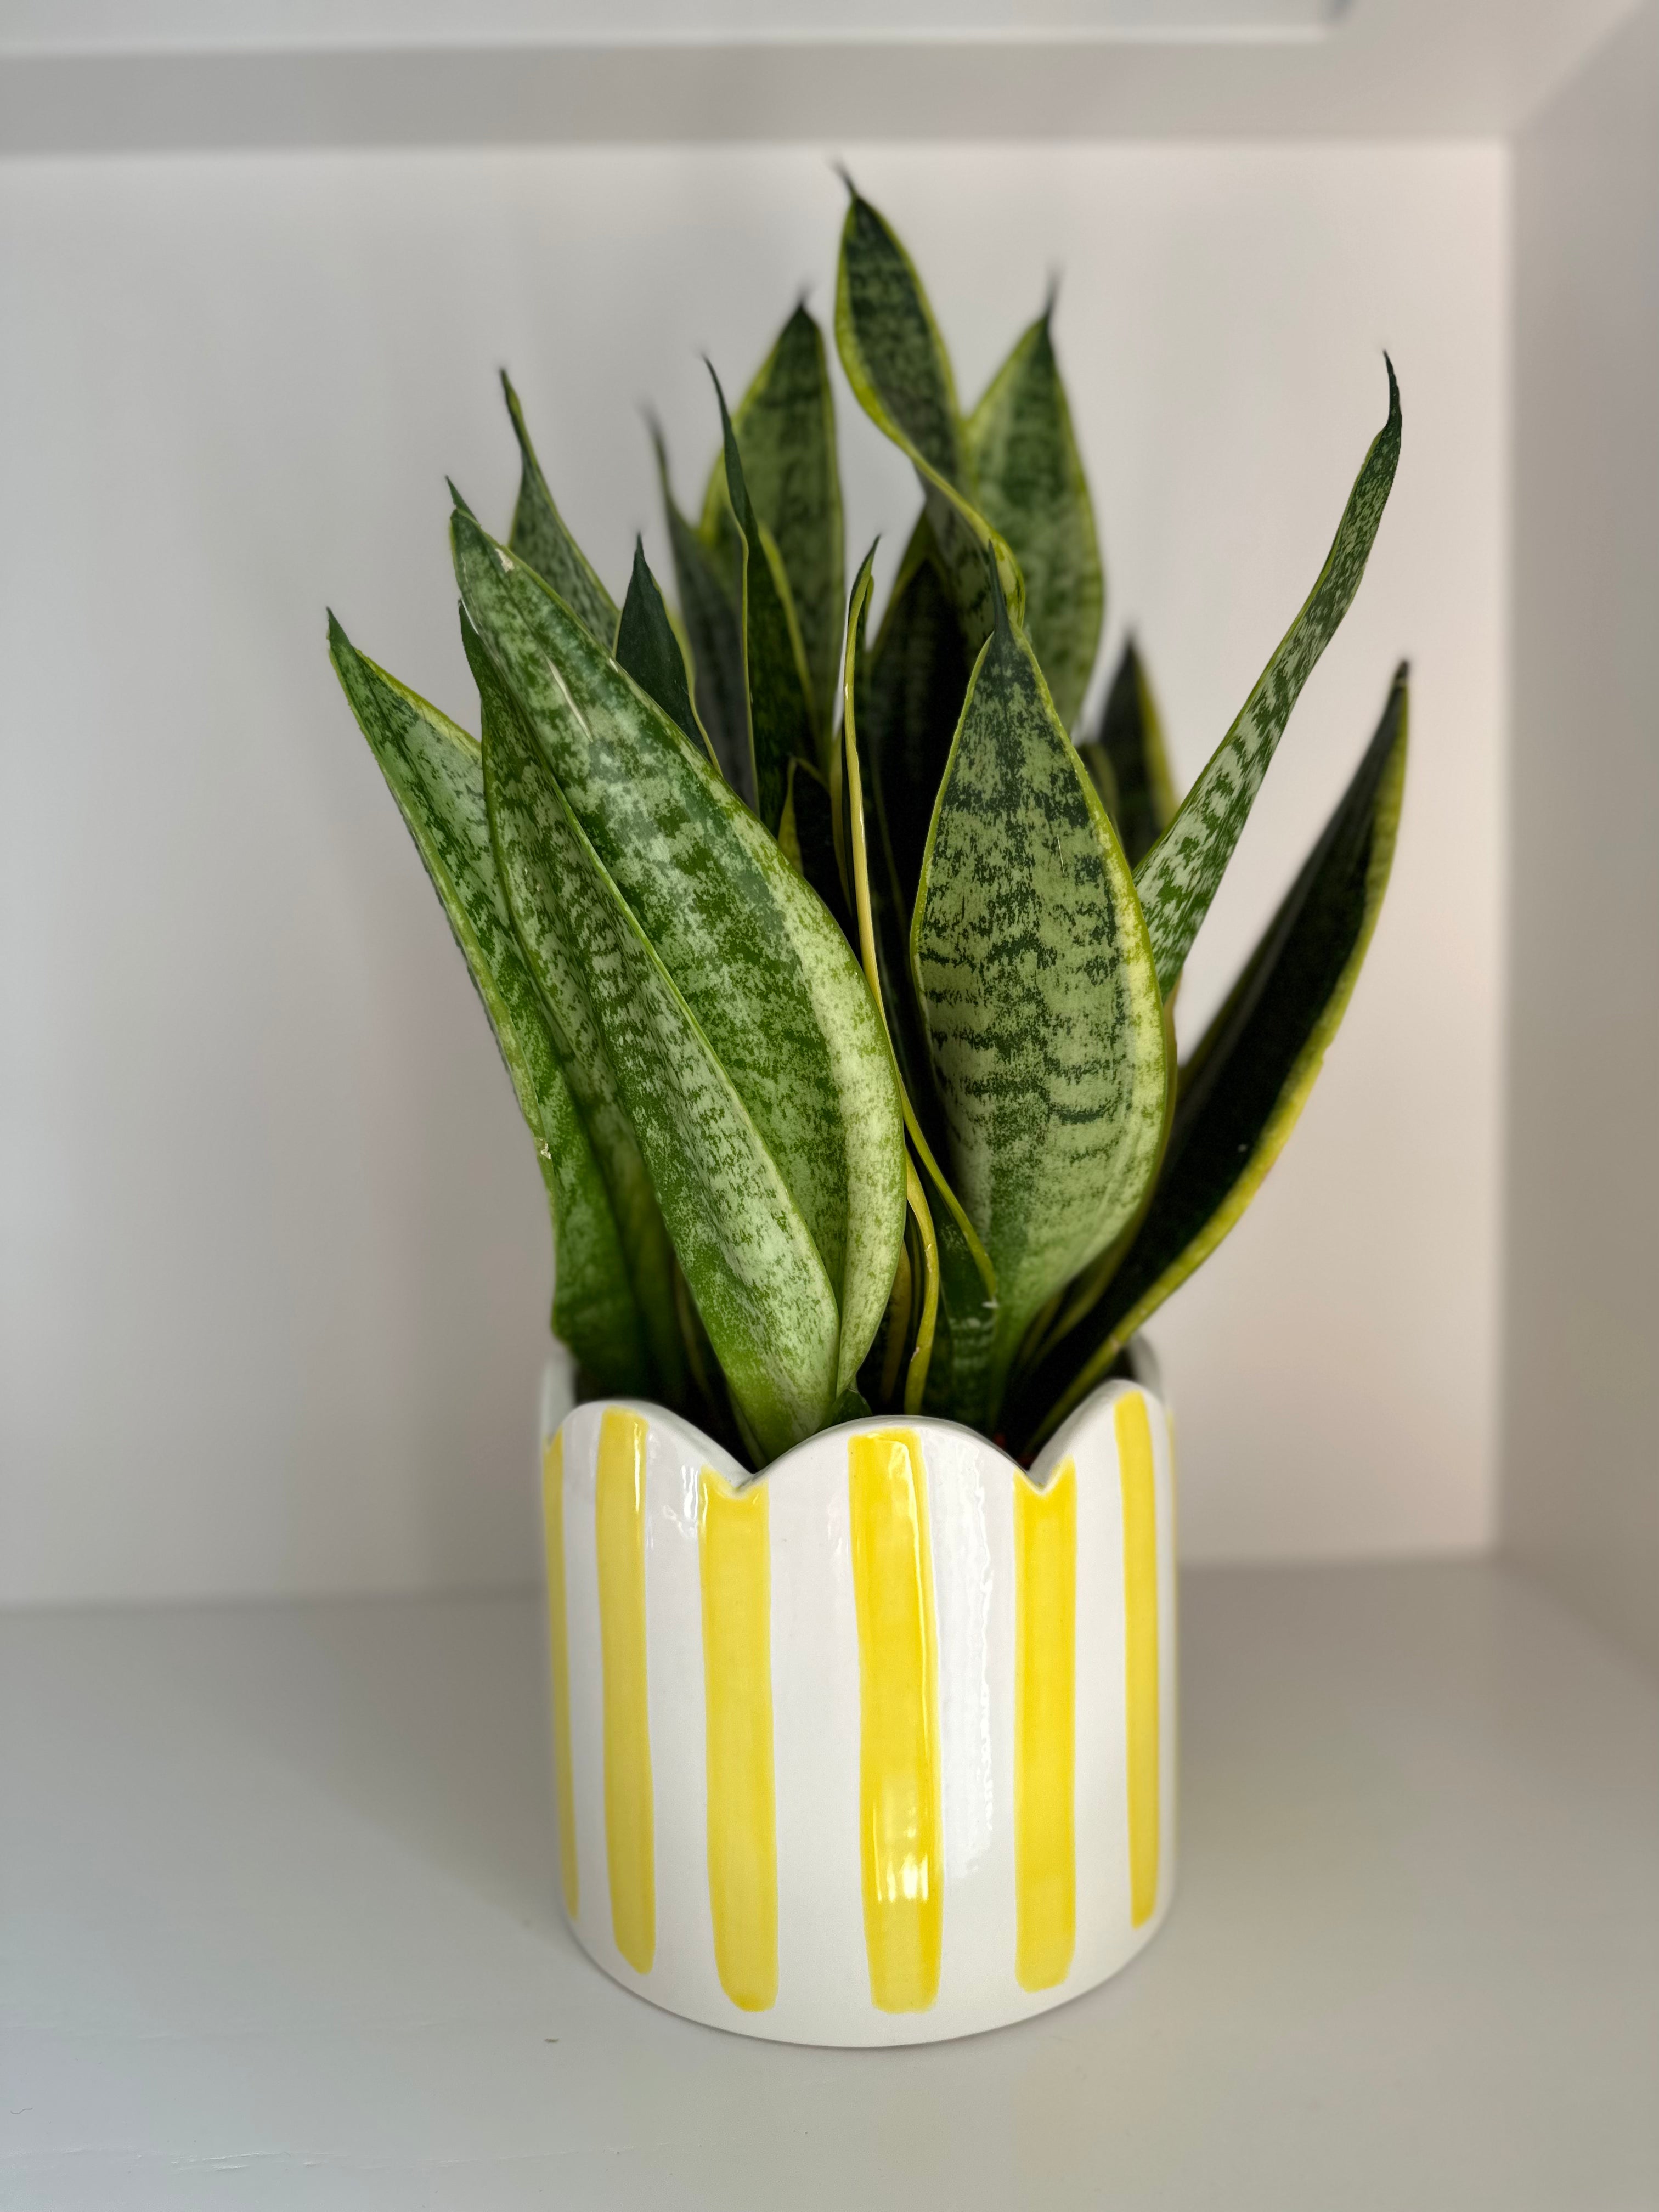 Ceramic yellow striped scalloped planter